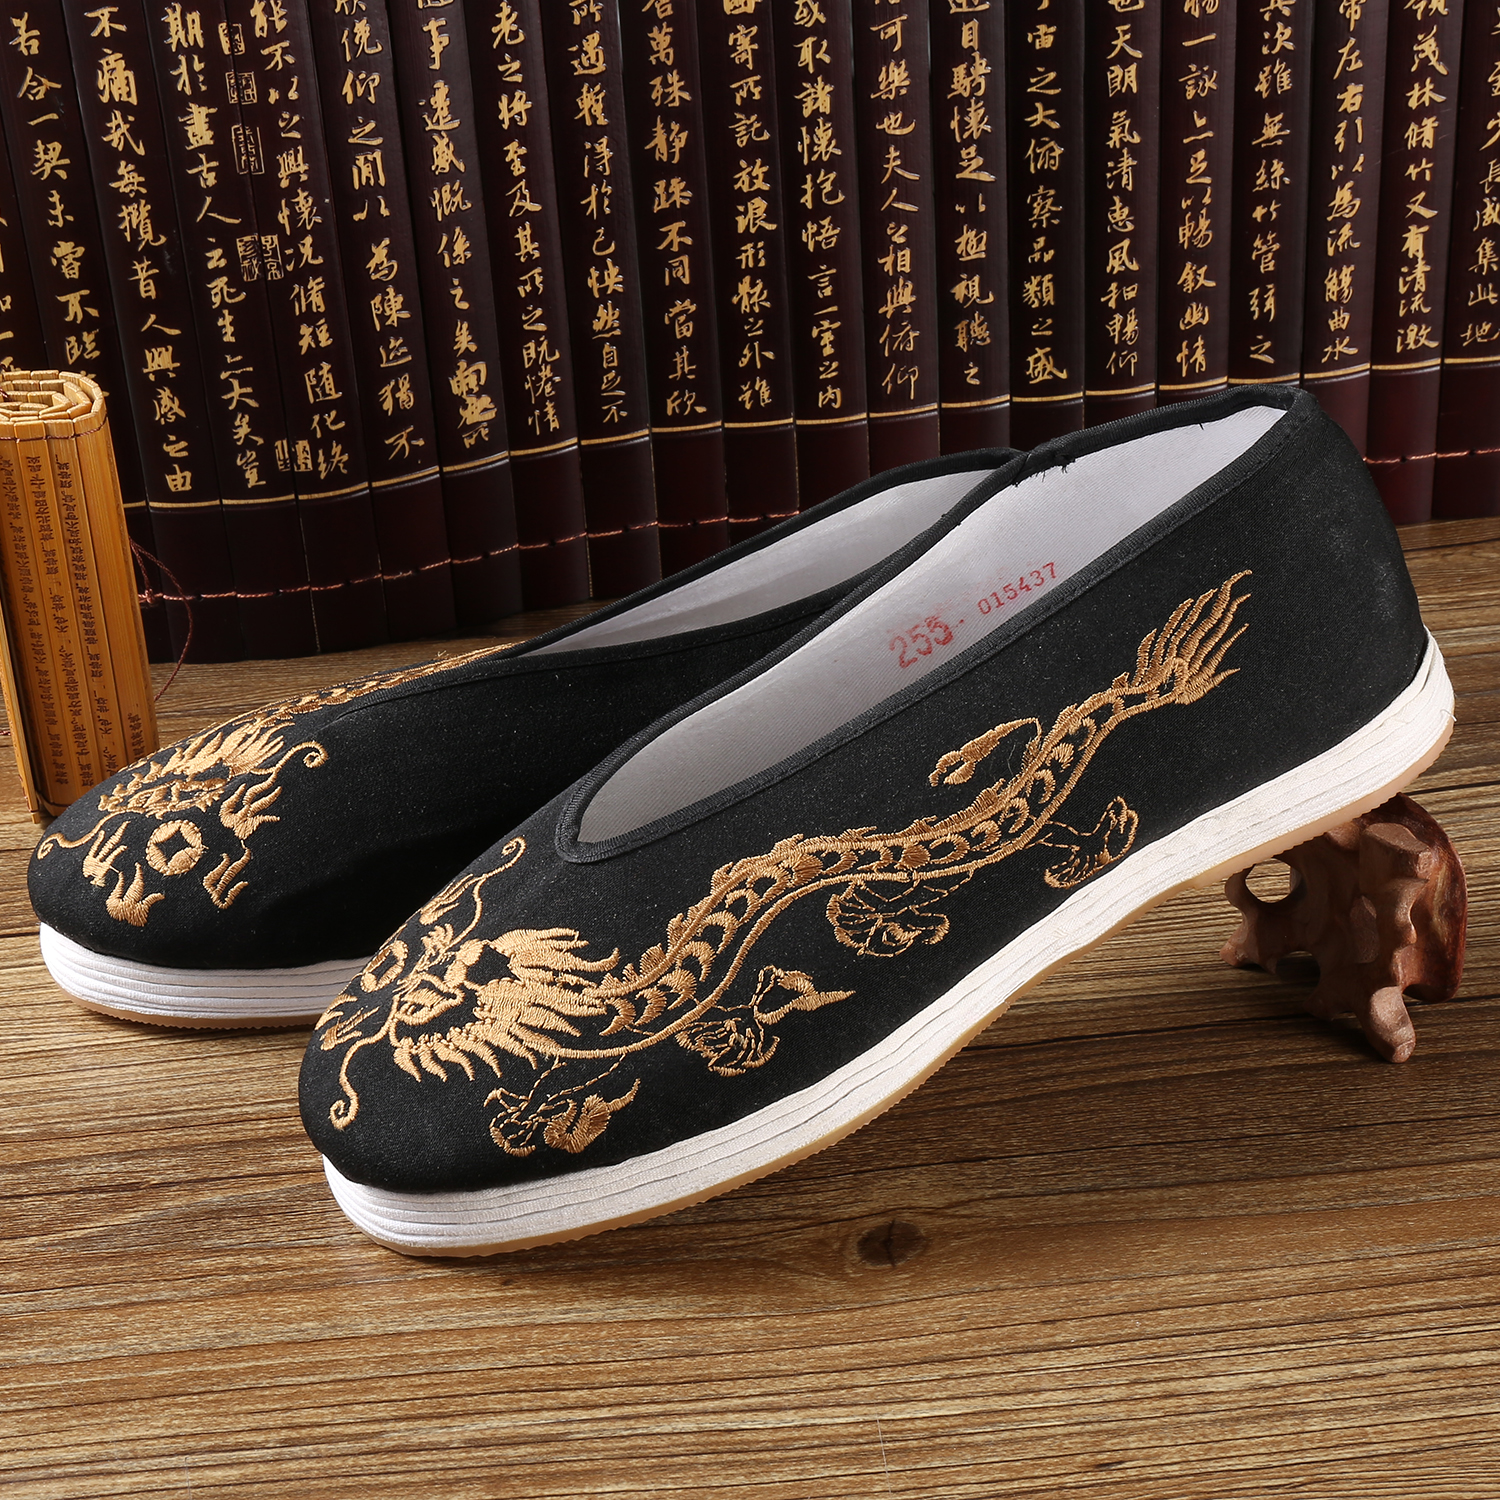 Китайская обувь династии Хань